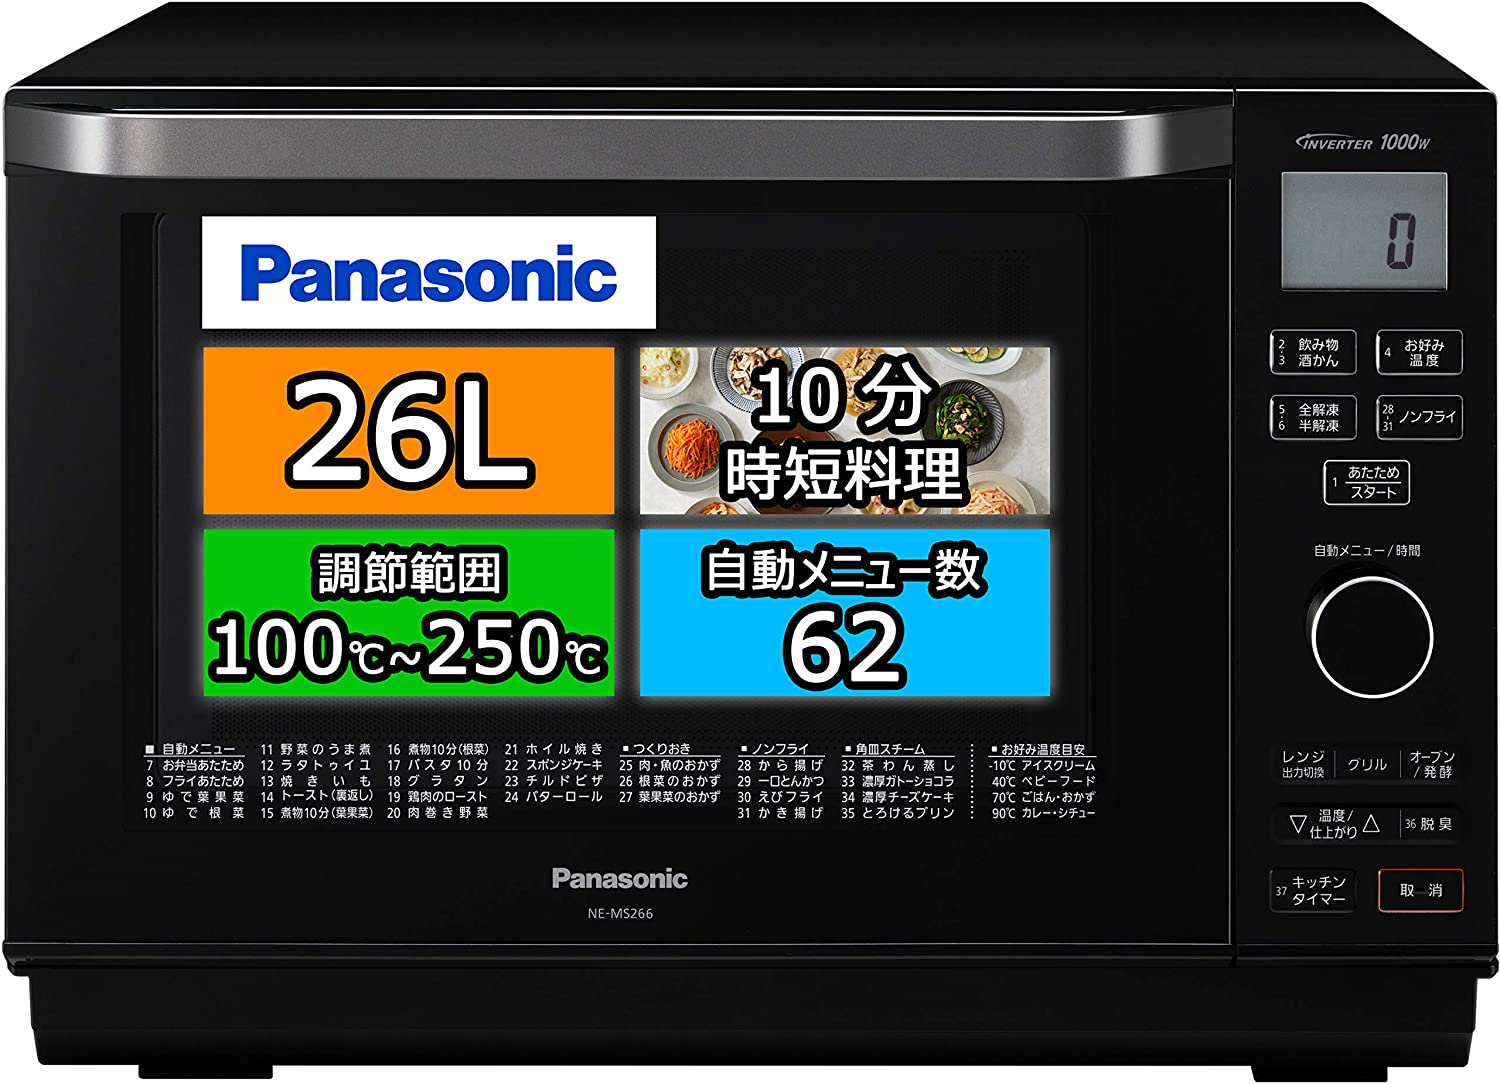 テレビ/映像機器 テレビ Panasonic(パナソニック) ビストロ スチームオーブンレンジ NE-BS657の 